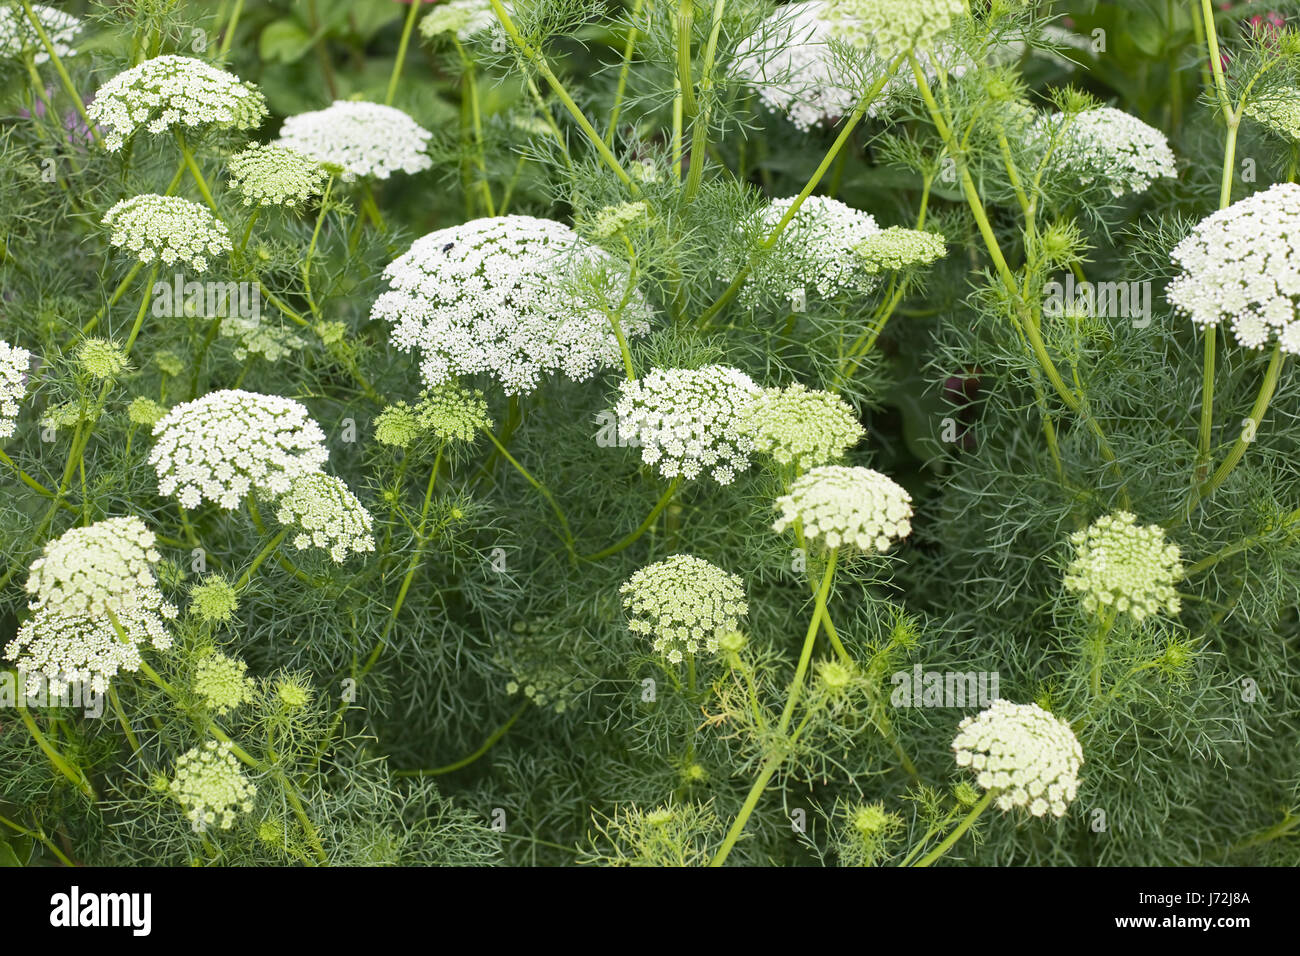 Herb pianta medicinale erba di prato verde erba giorno la salute delle piante di fiori da giardino Foto Stock